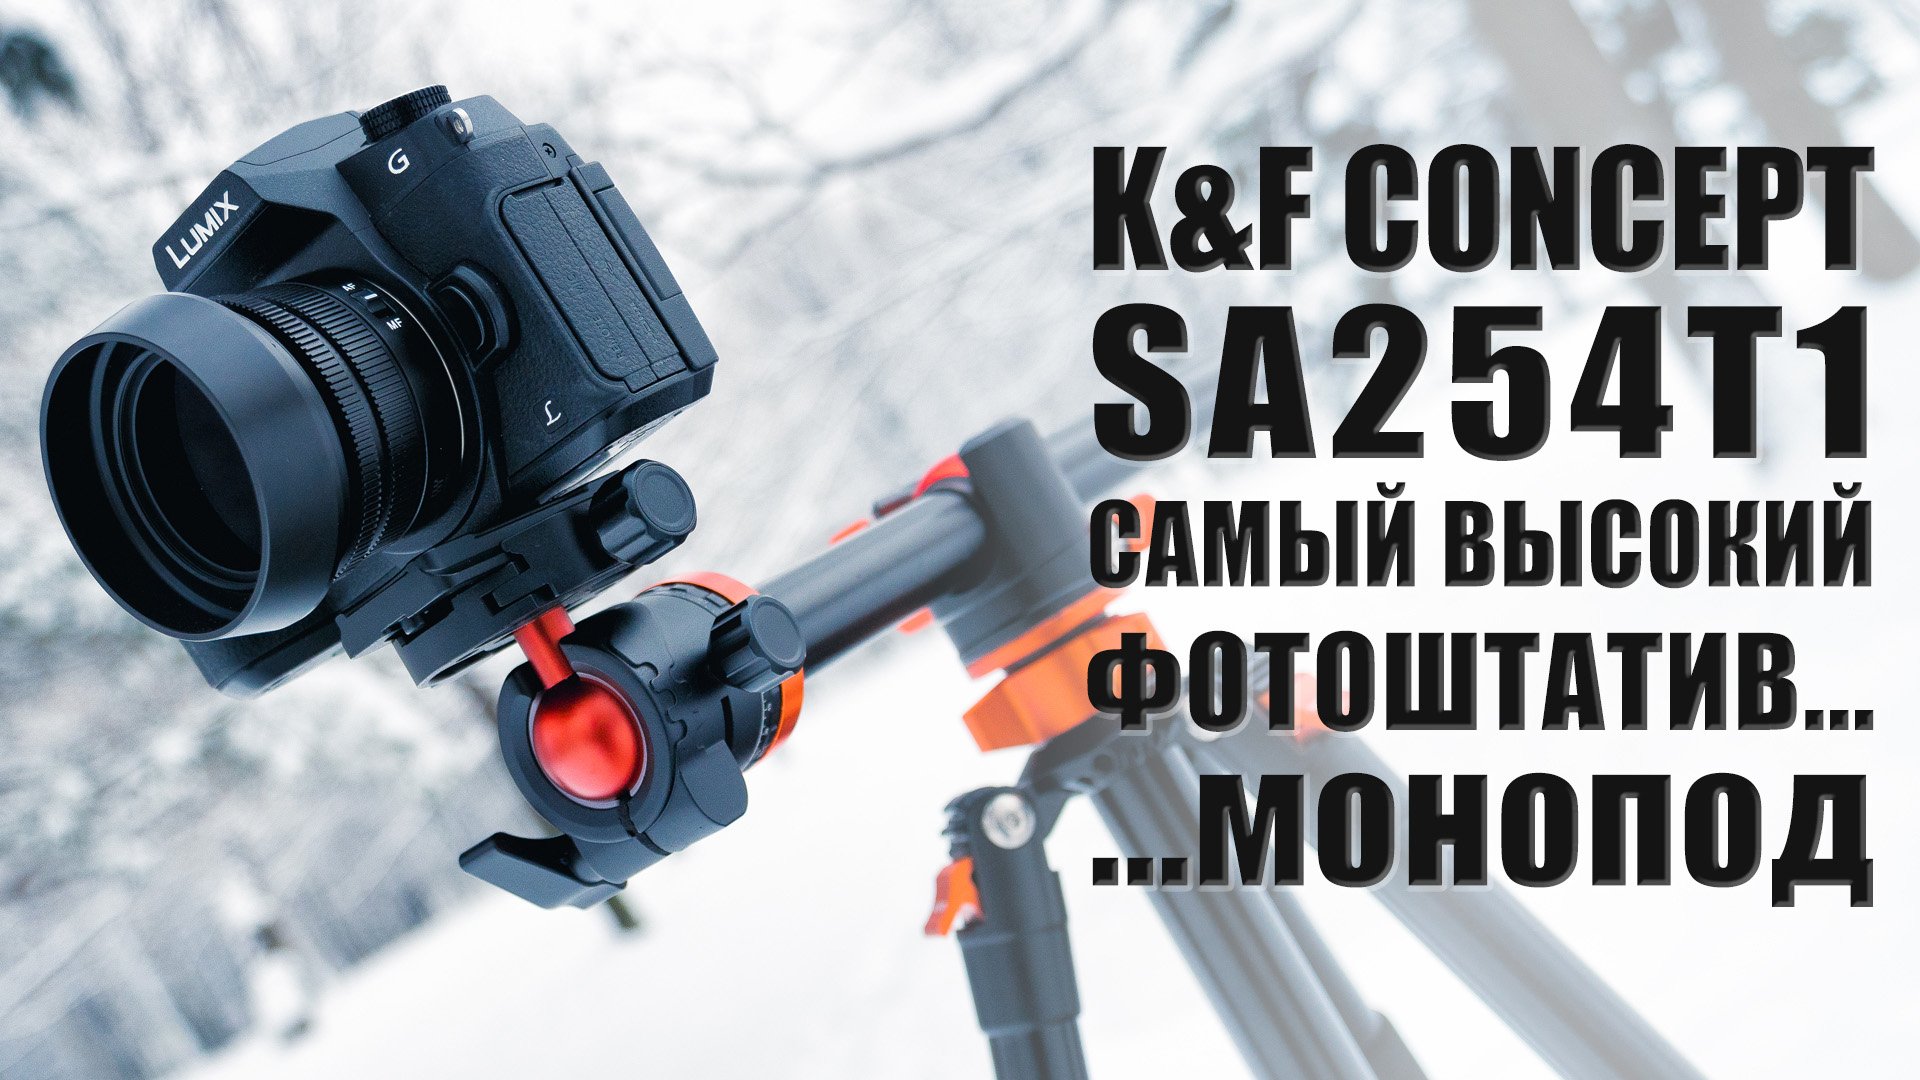 Штатив T-серии от K&F Concept | Обзор высоченного фотоштатива/монопода SA254T1